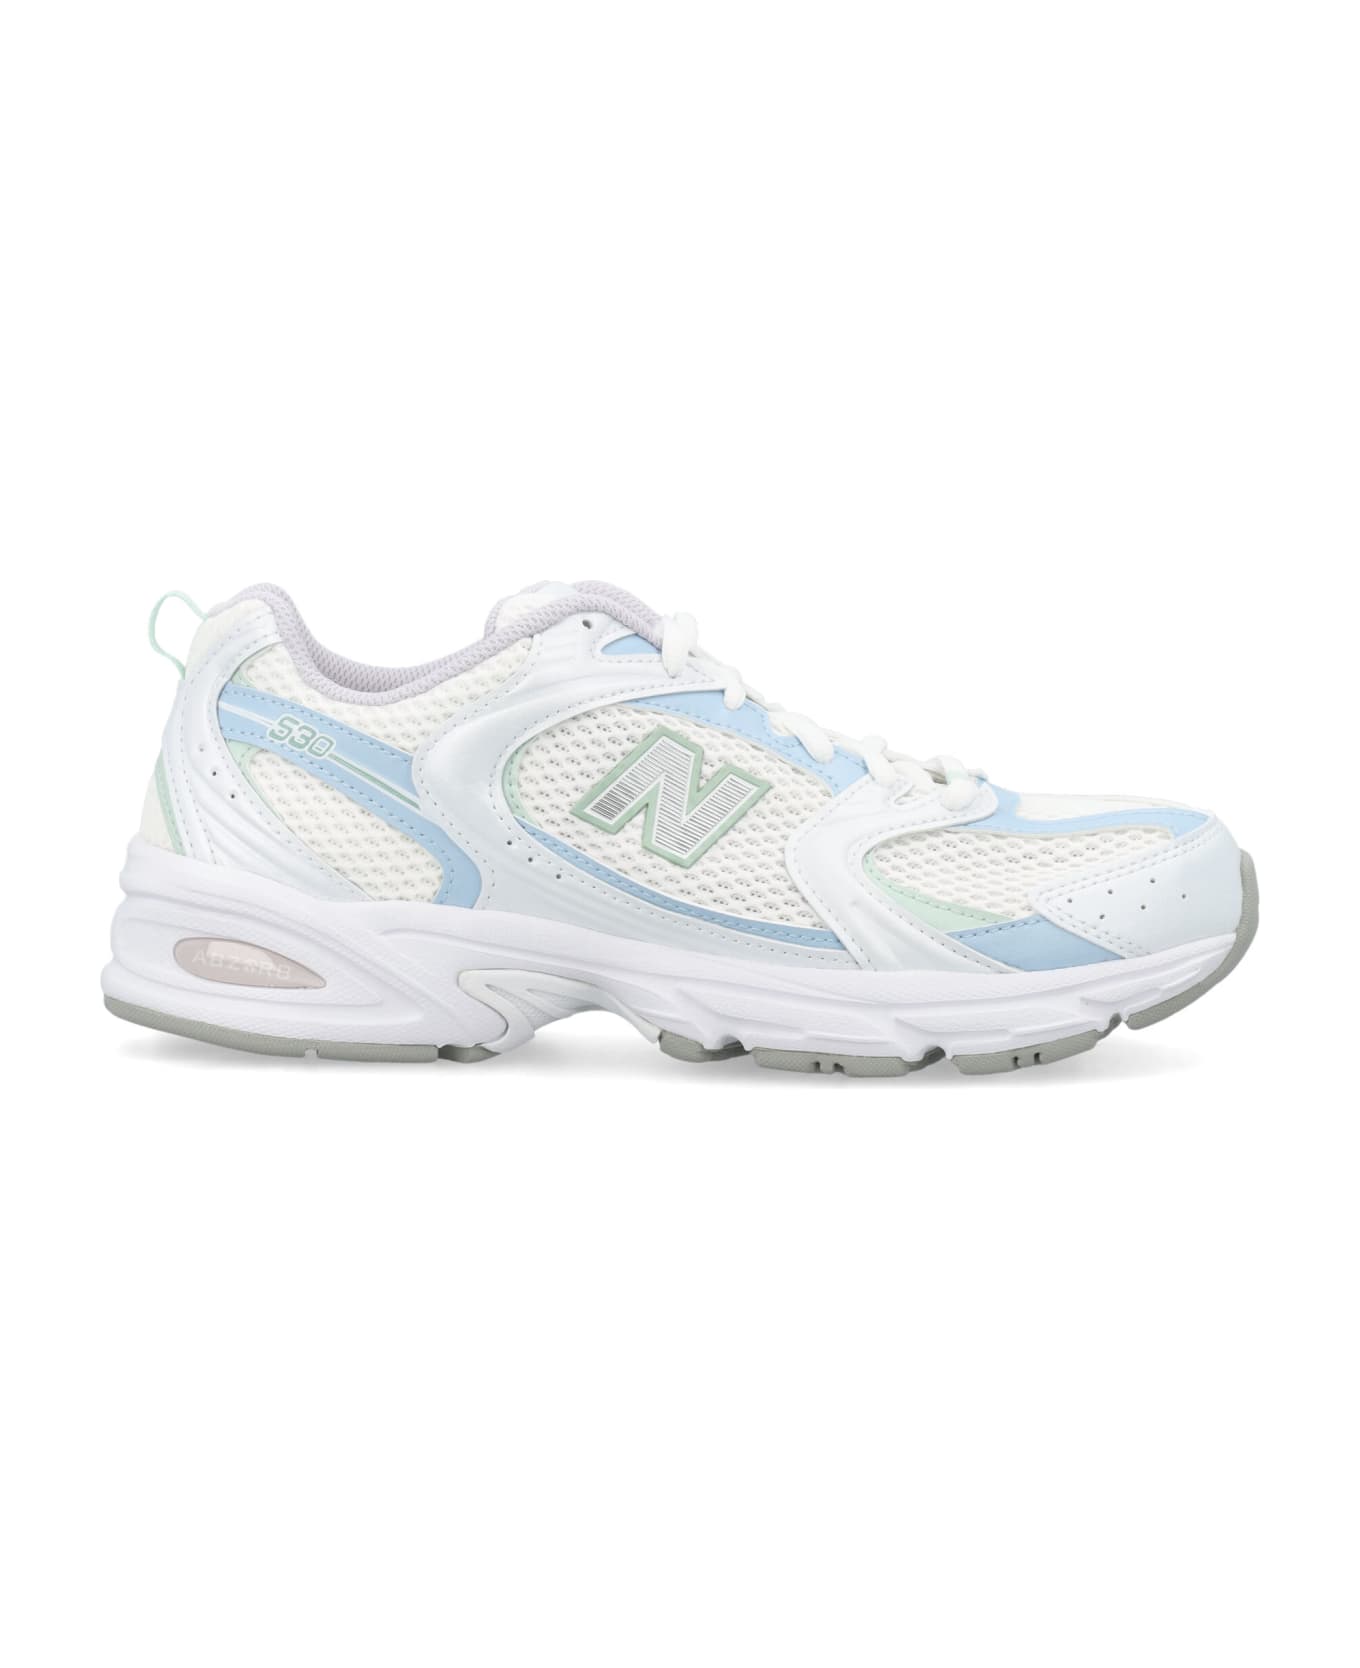 New Balance 530 Sneakers - WHITE/LIGHT BLUE スニーカー